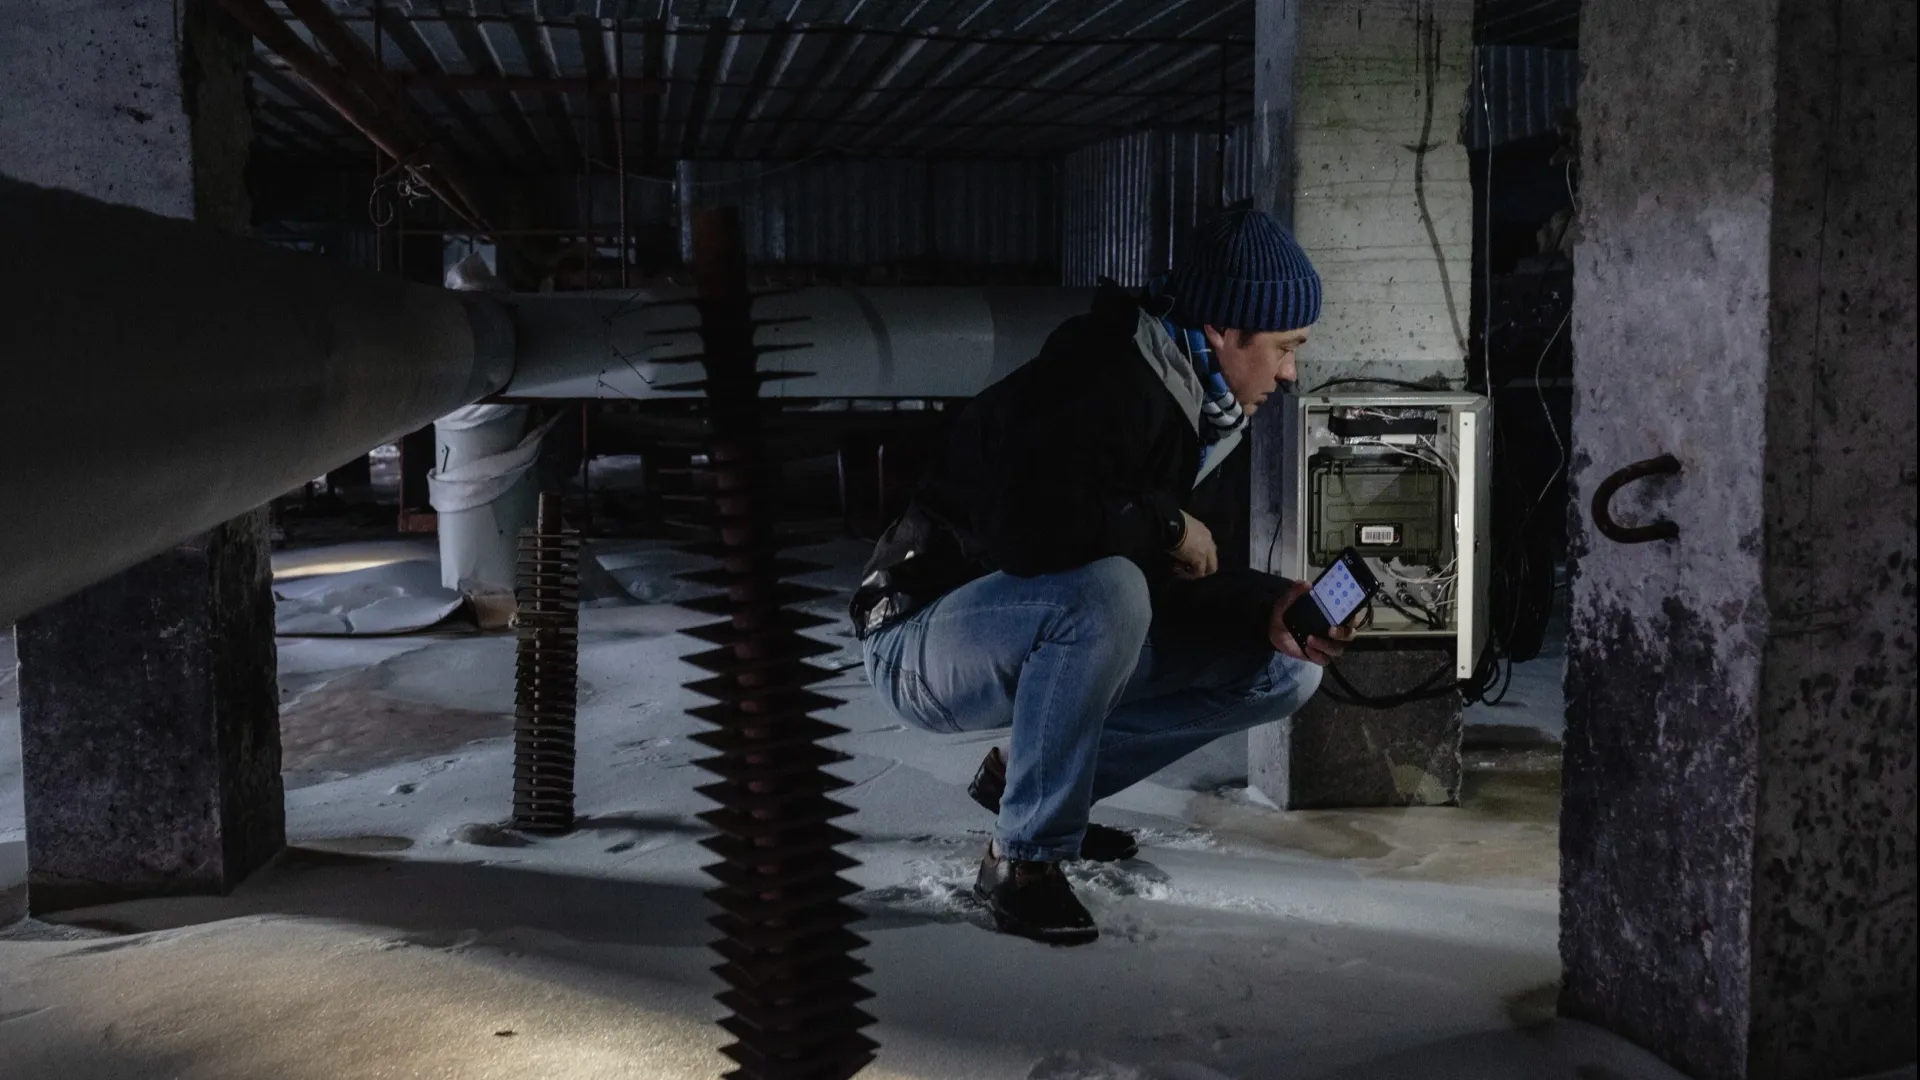 Осмотр термометрического оборудования под одним из зданий Салехарда. Фото предоставлено Александром Шеиным